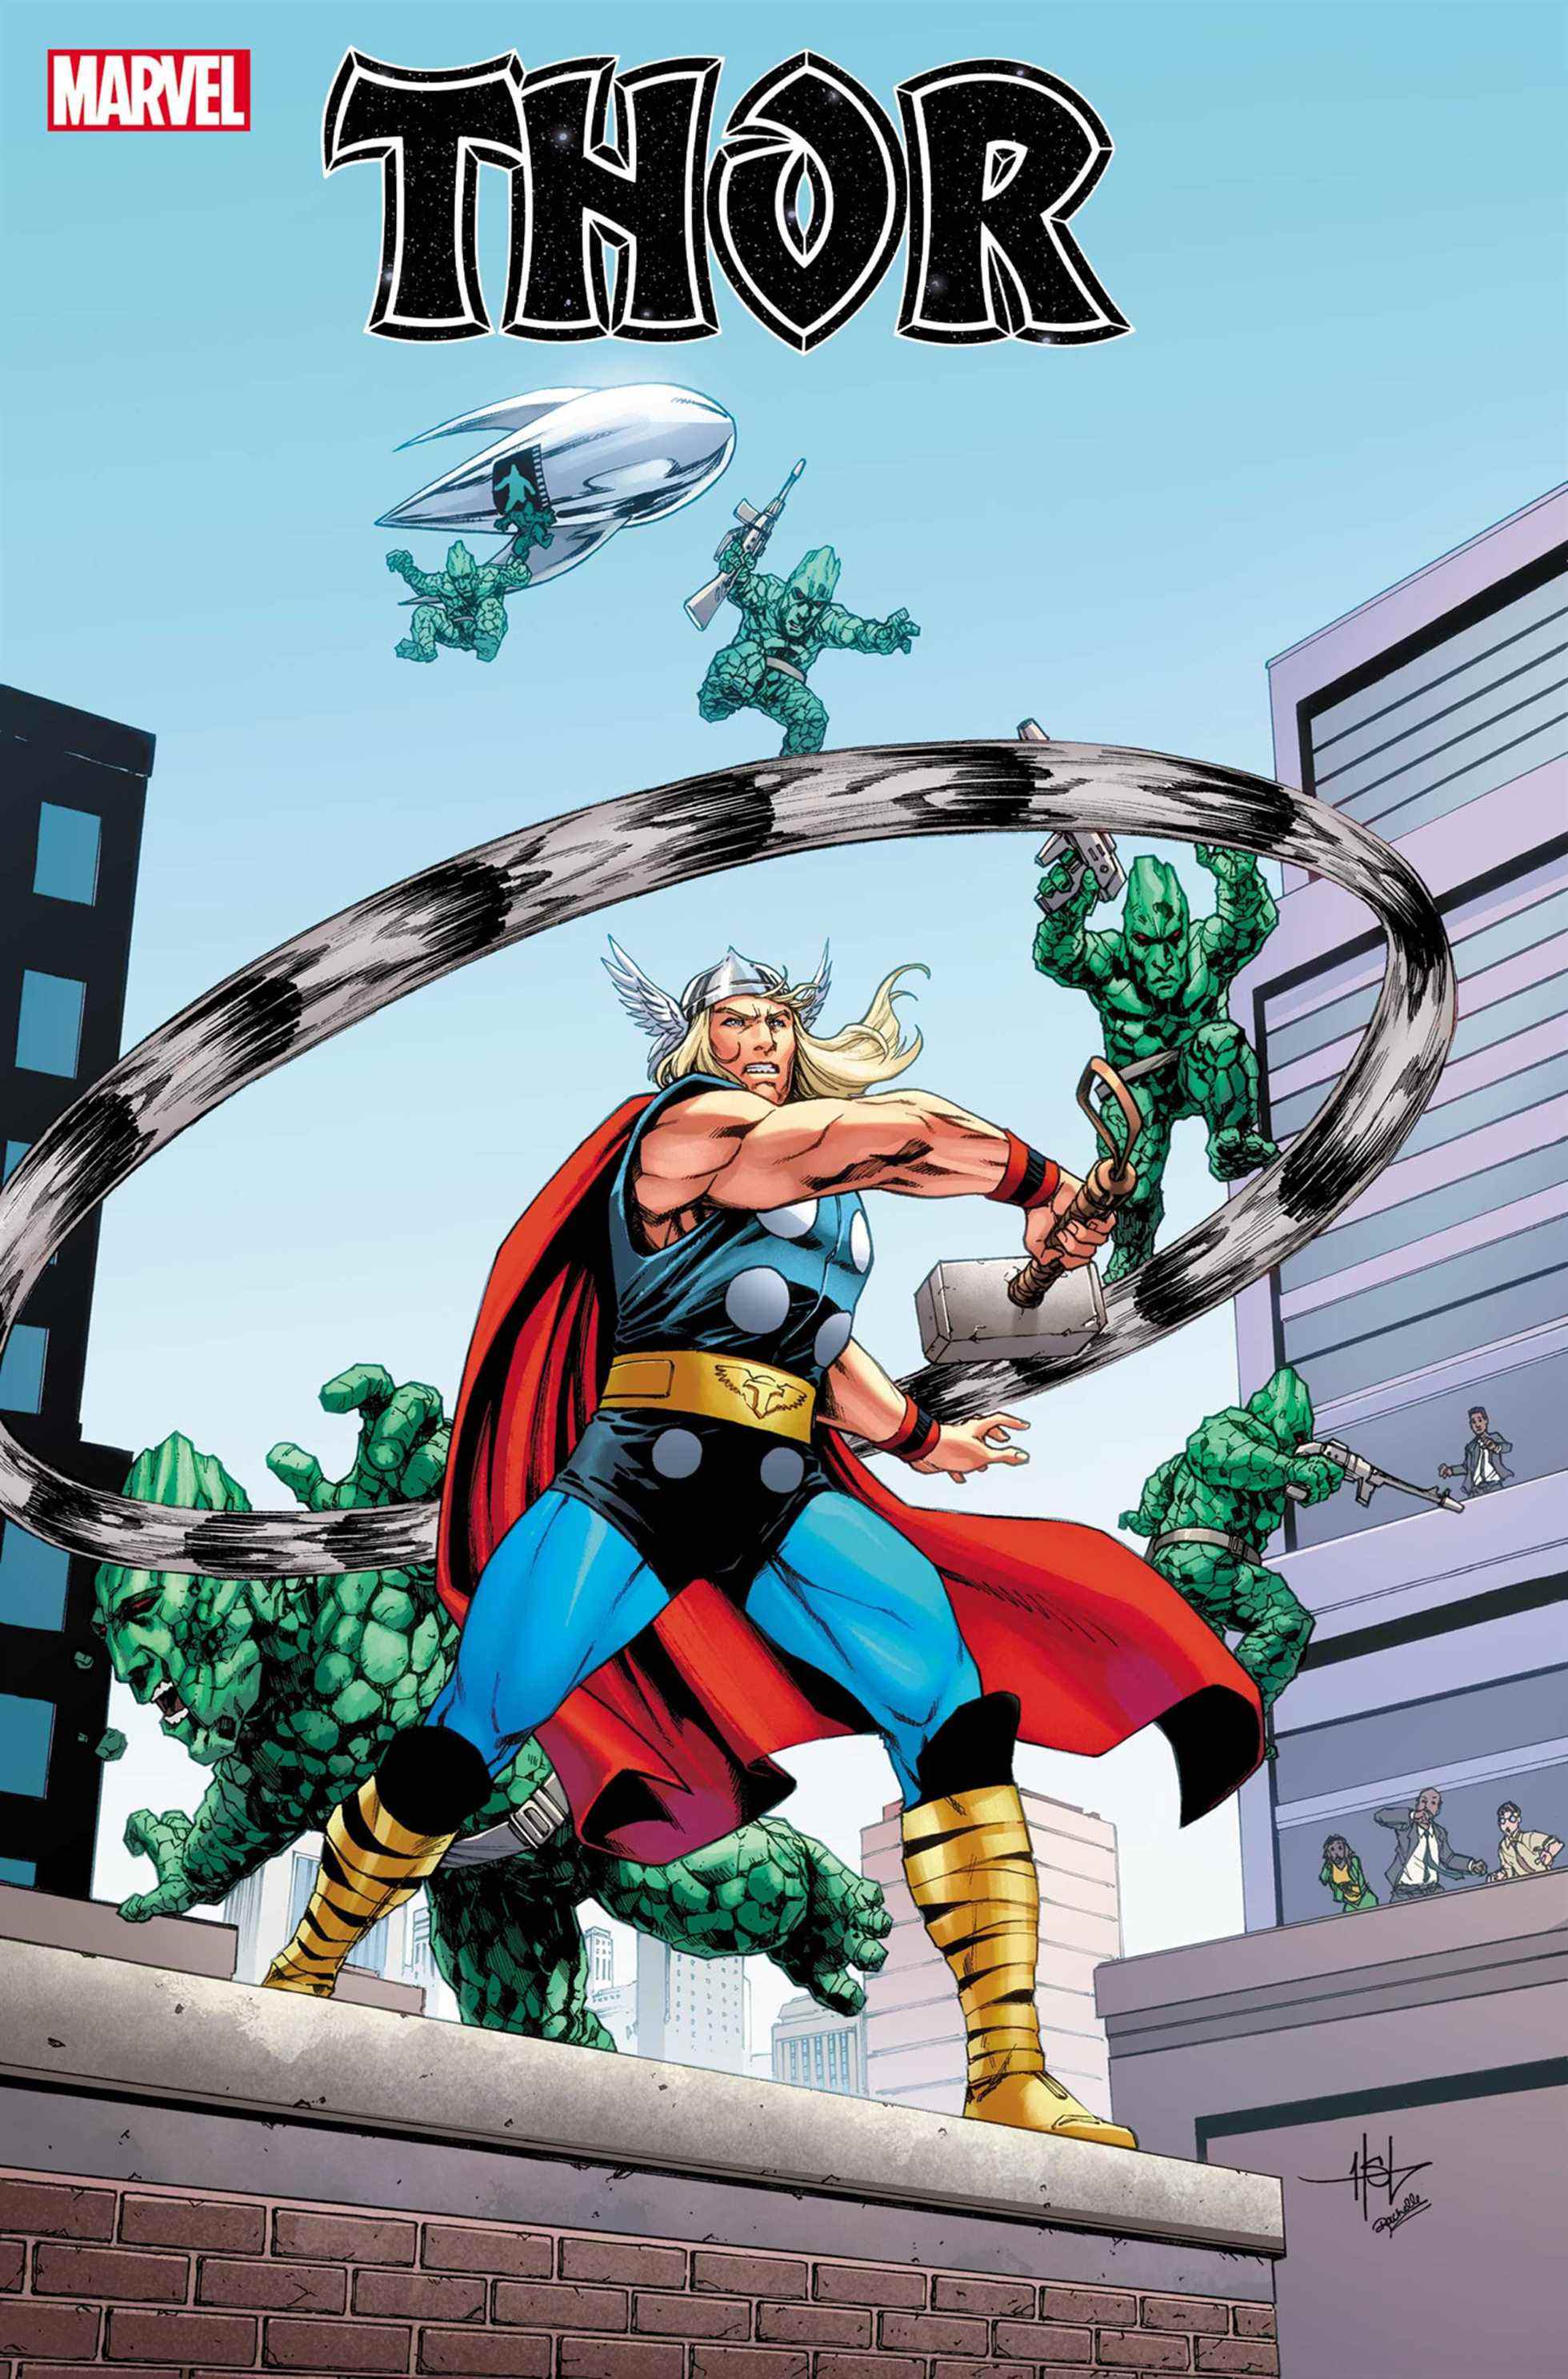 Couverture de la variante Thor # 21